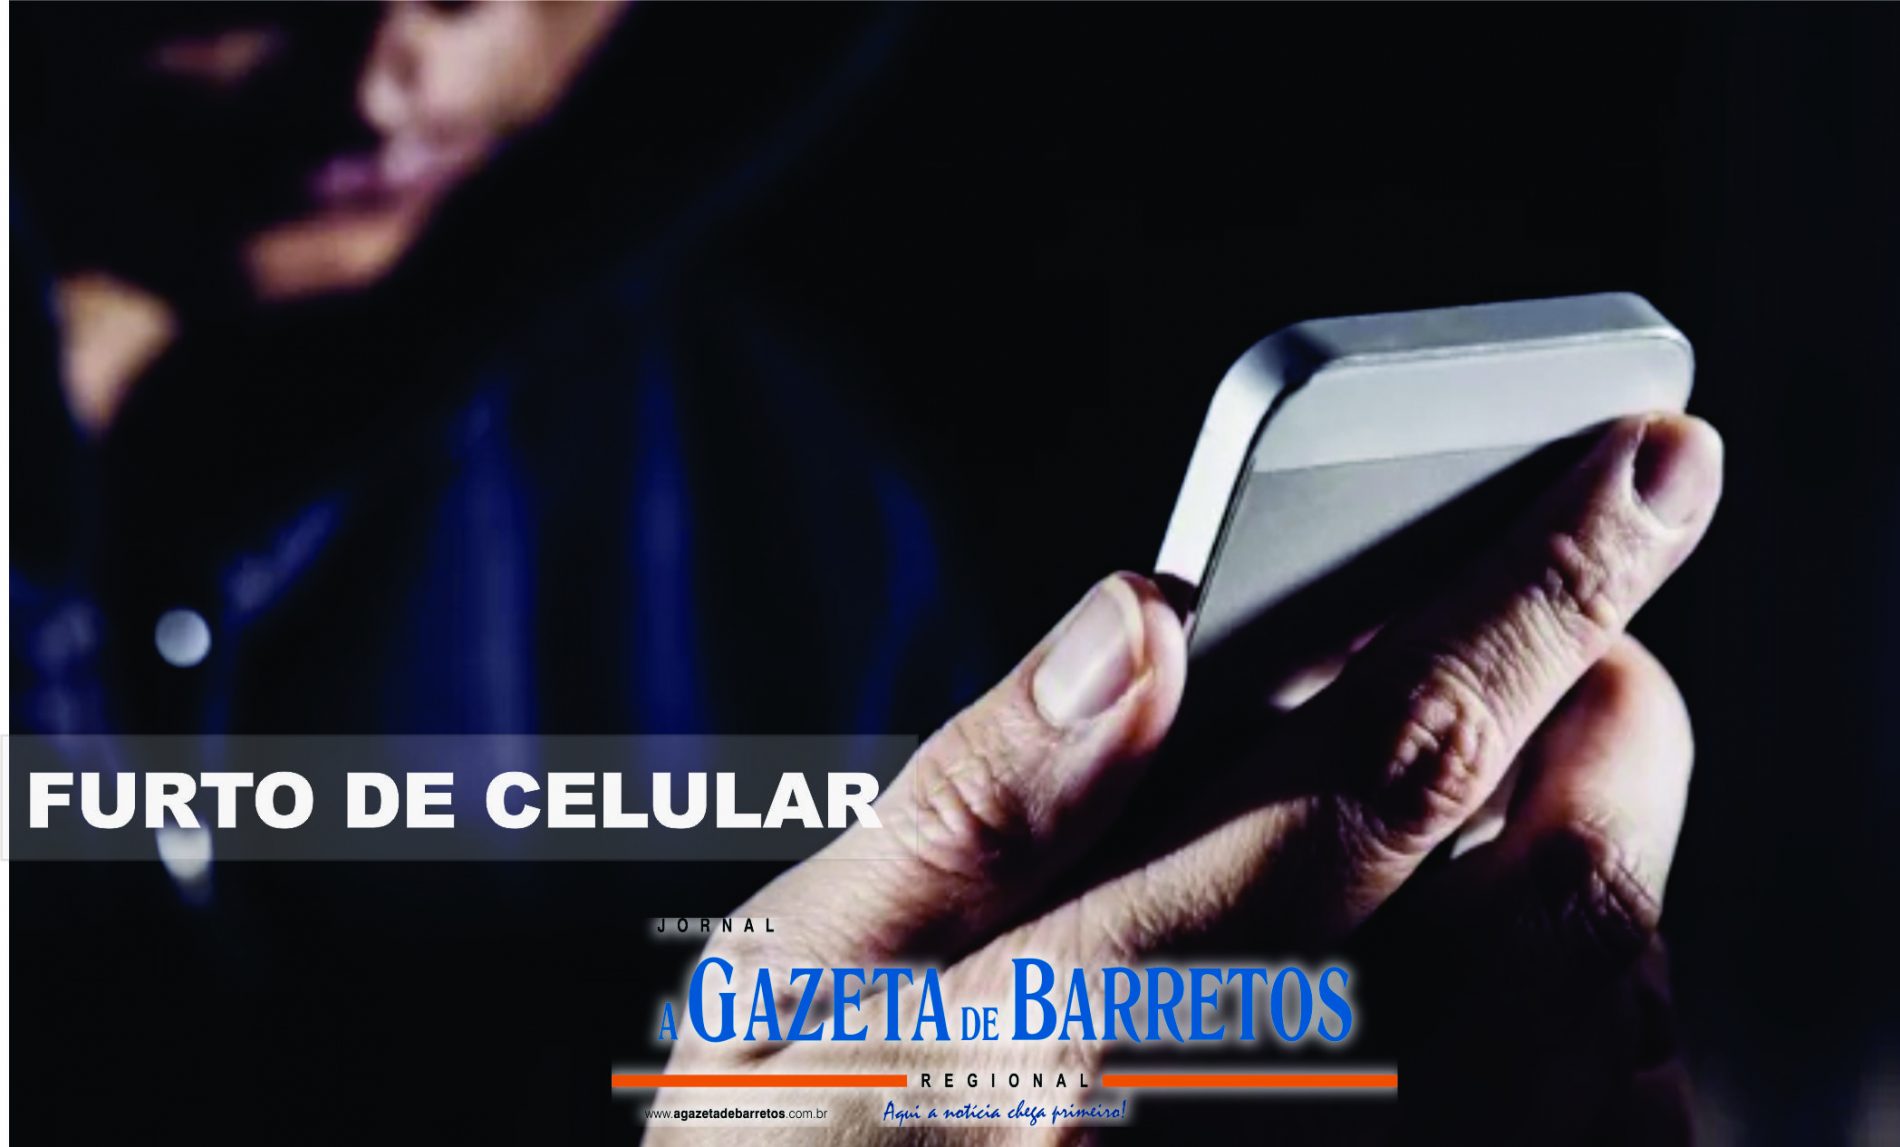 Policia Civil de Barretos recupera celular furtado em festa e prende receptador